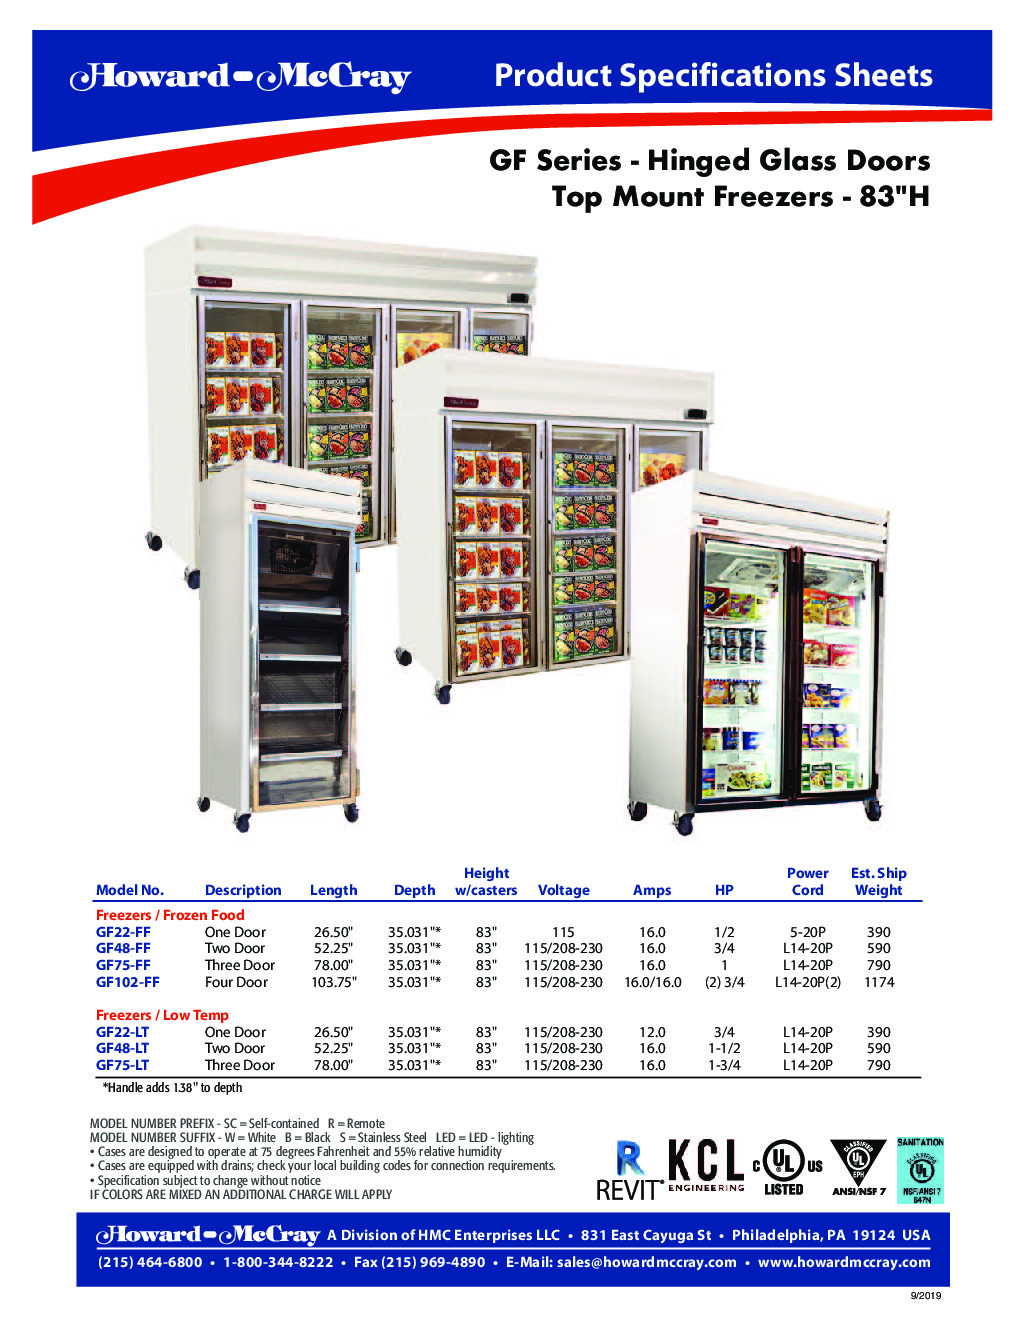 Howard-McCray GF22-LT Merchandiser Freezer